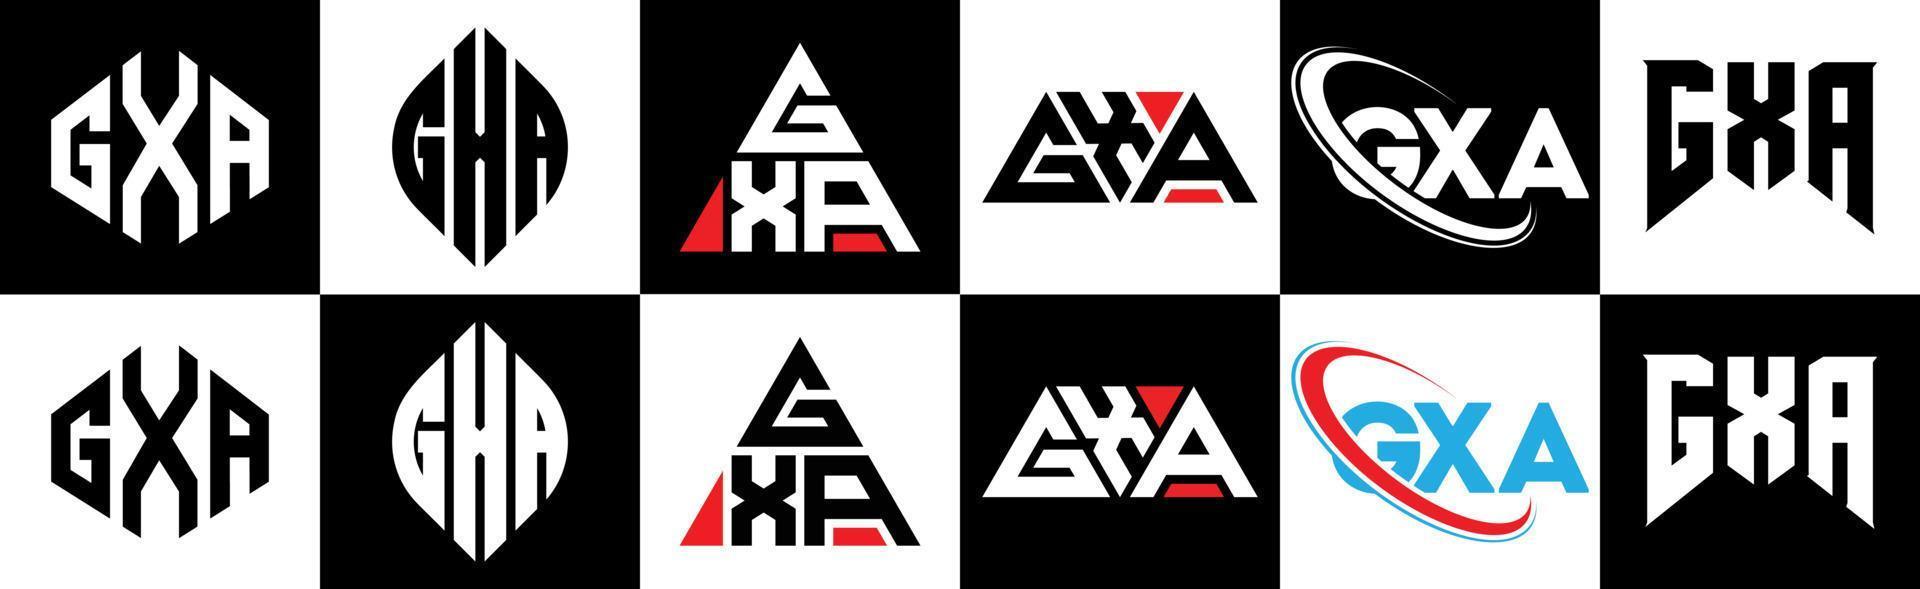 création de logo de lettre gxa en six styles. gxa polygone, cercle, triangle, hexagone, style plat et simple avec logo de lettre de variation de couleur noir et blanc dans un plan de travail. logo minimaliste et classique gxa vecteur